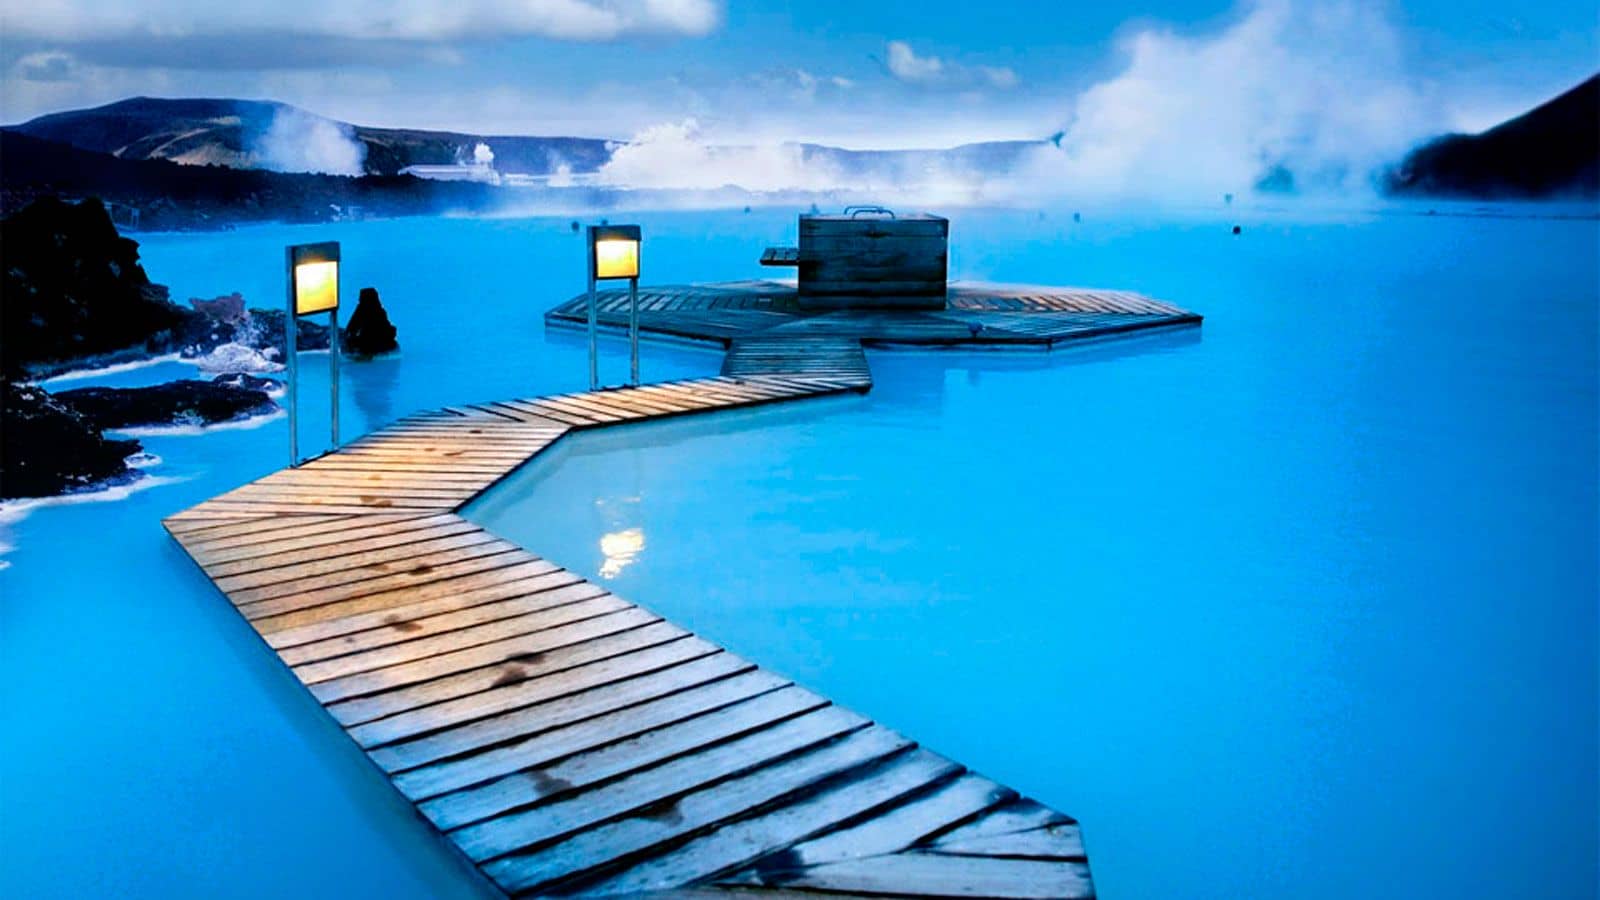  Ισλανδία: Η γεωθερμική λίμνη που κόβει την ανάσα